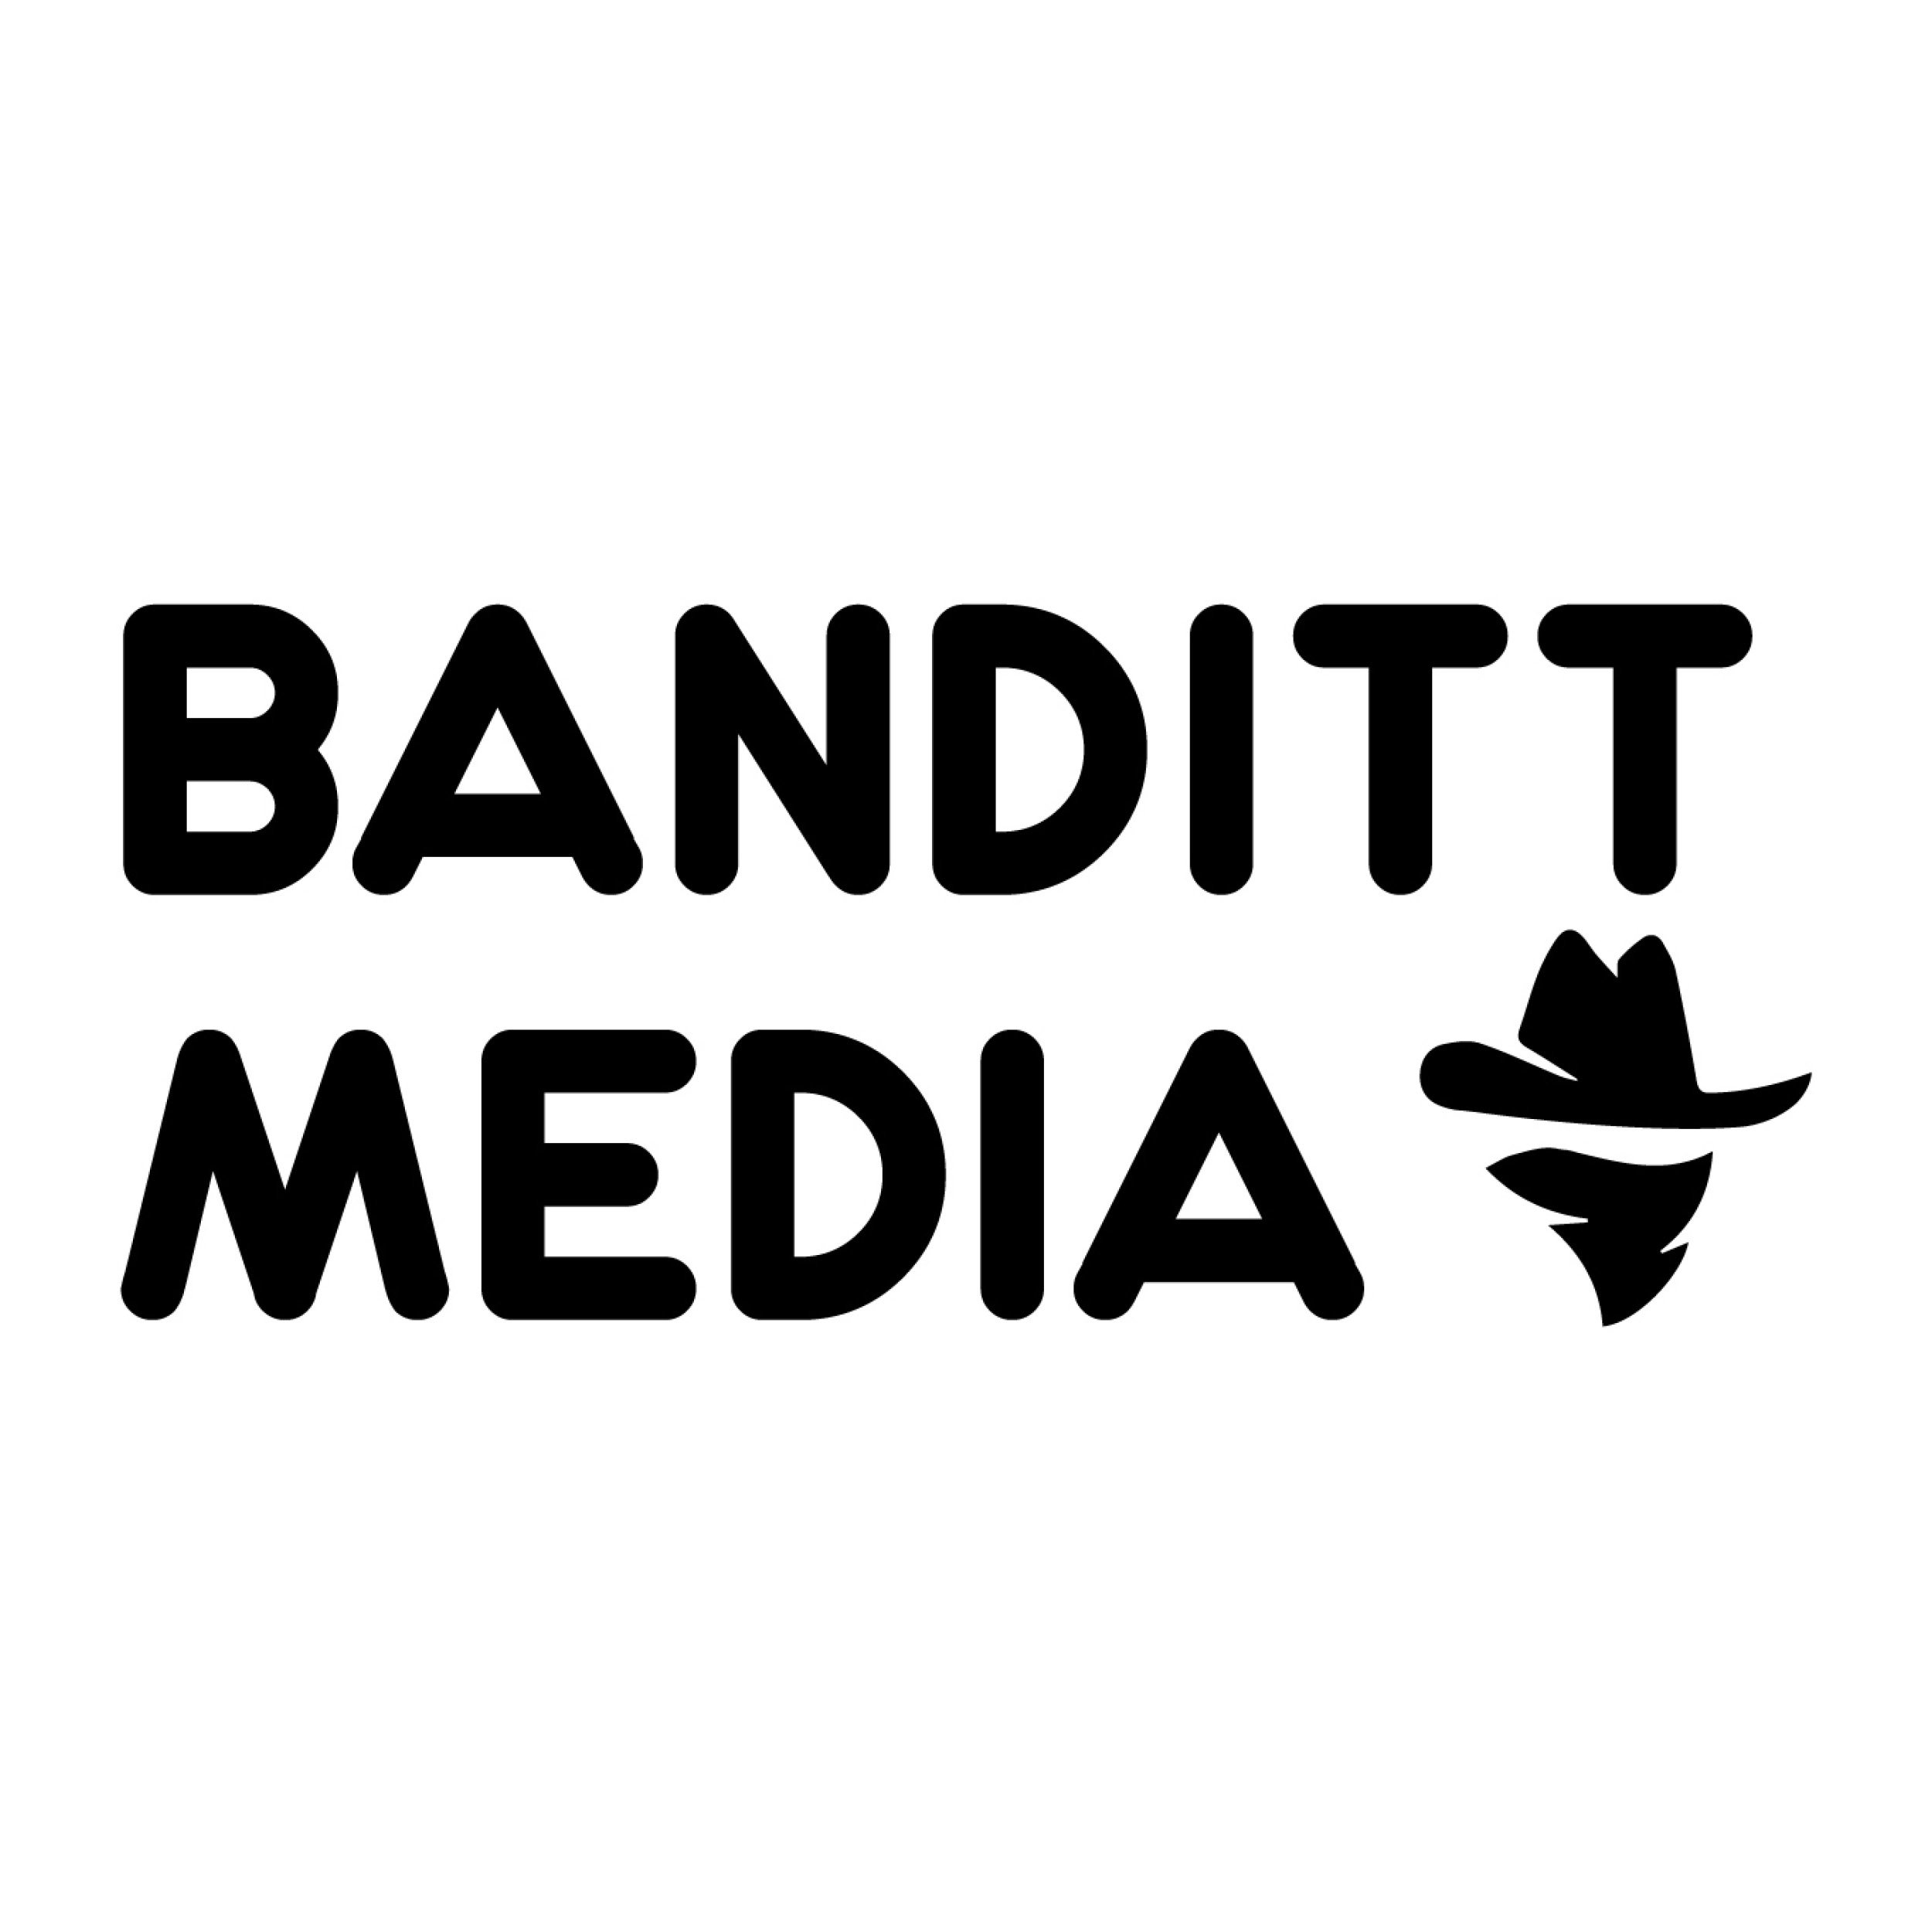 Banditt Media